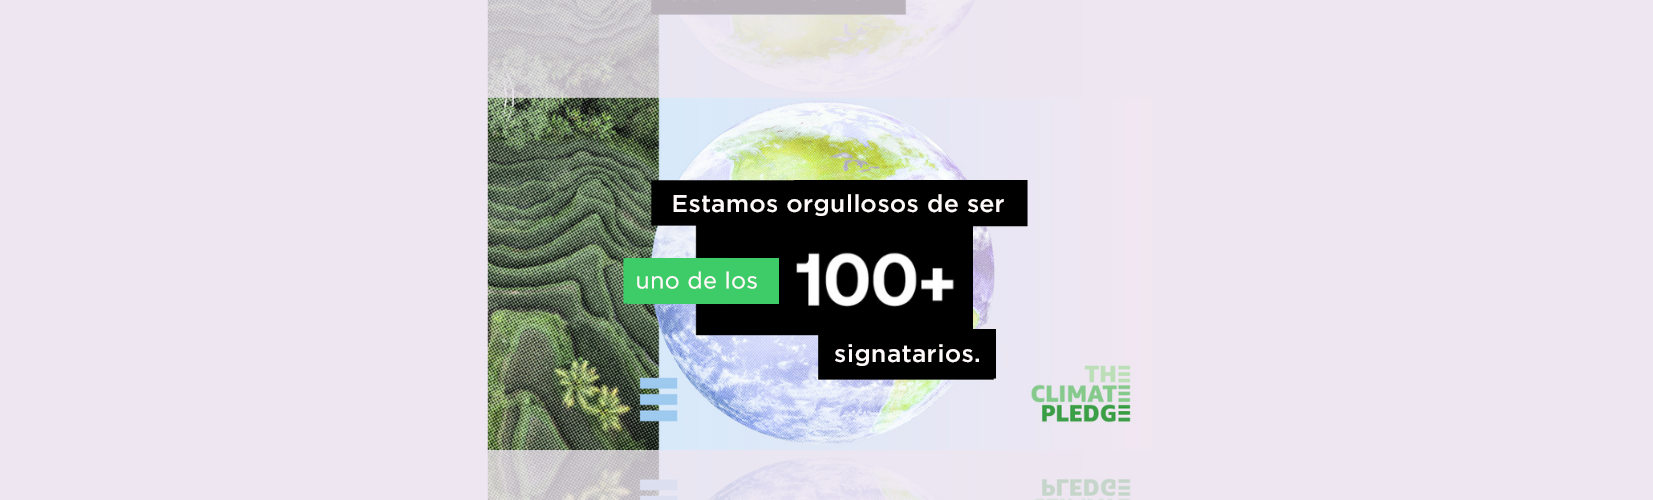 The Climate Pledge - Más de 100 signatarios